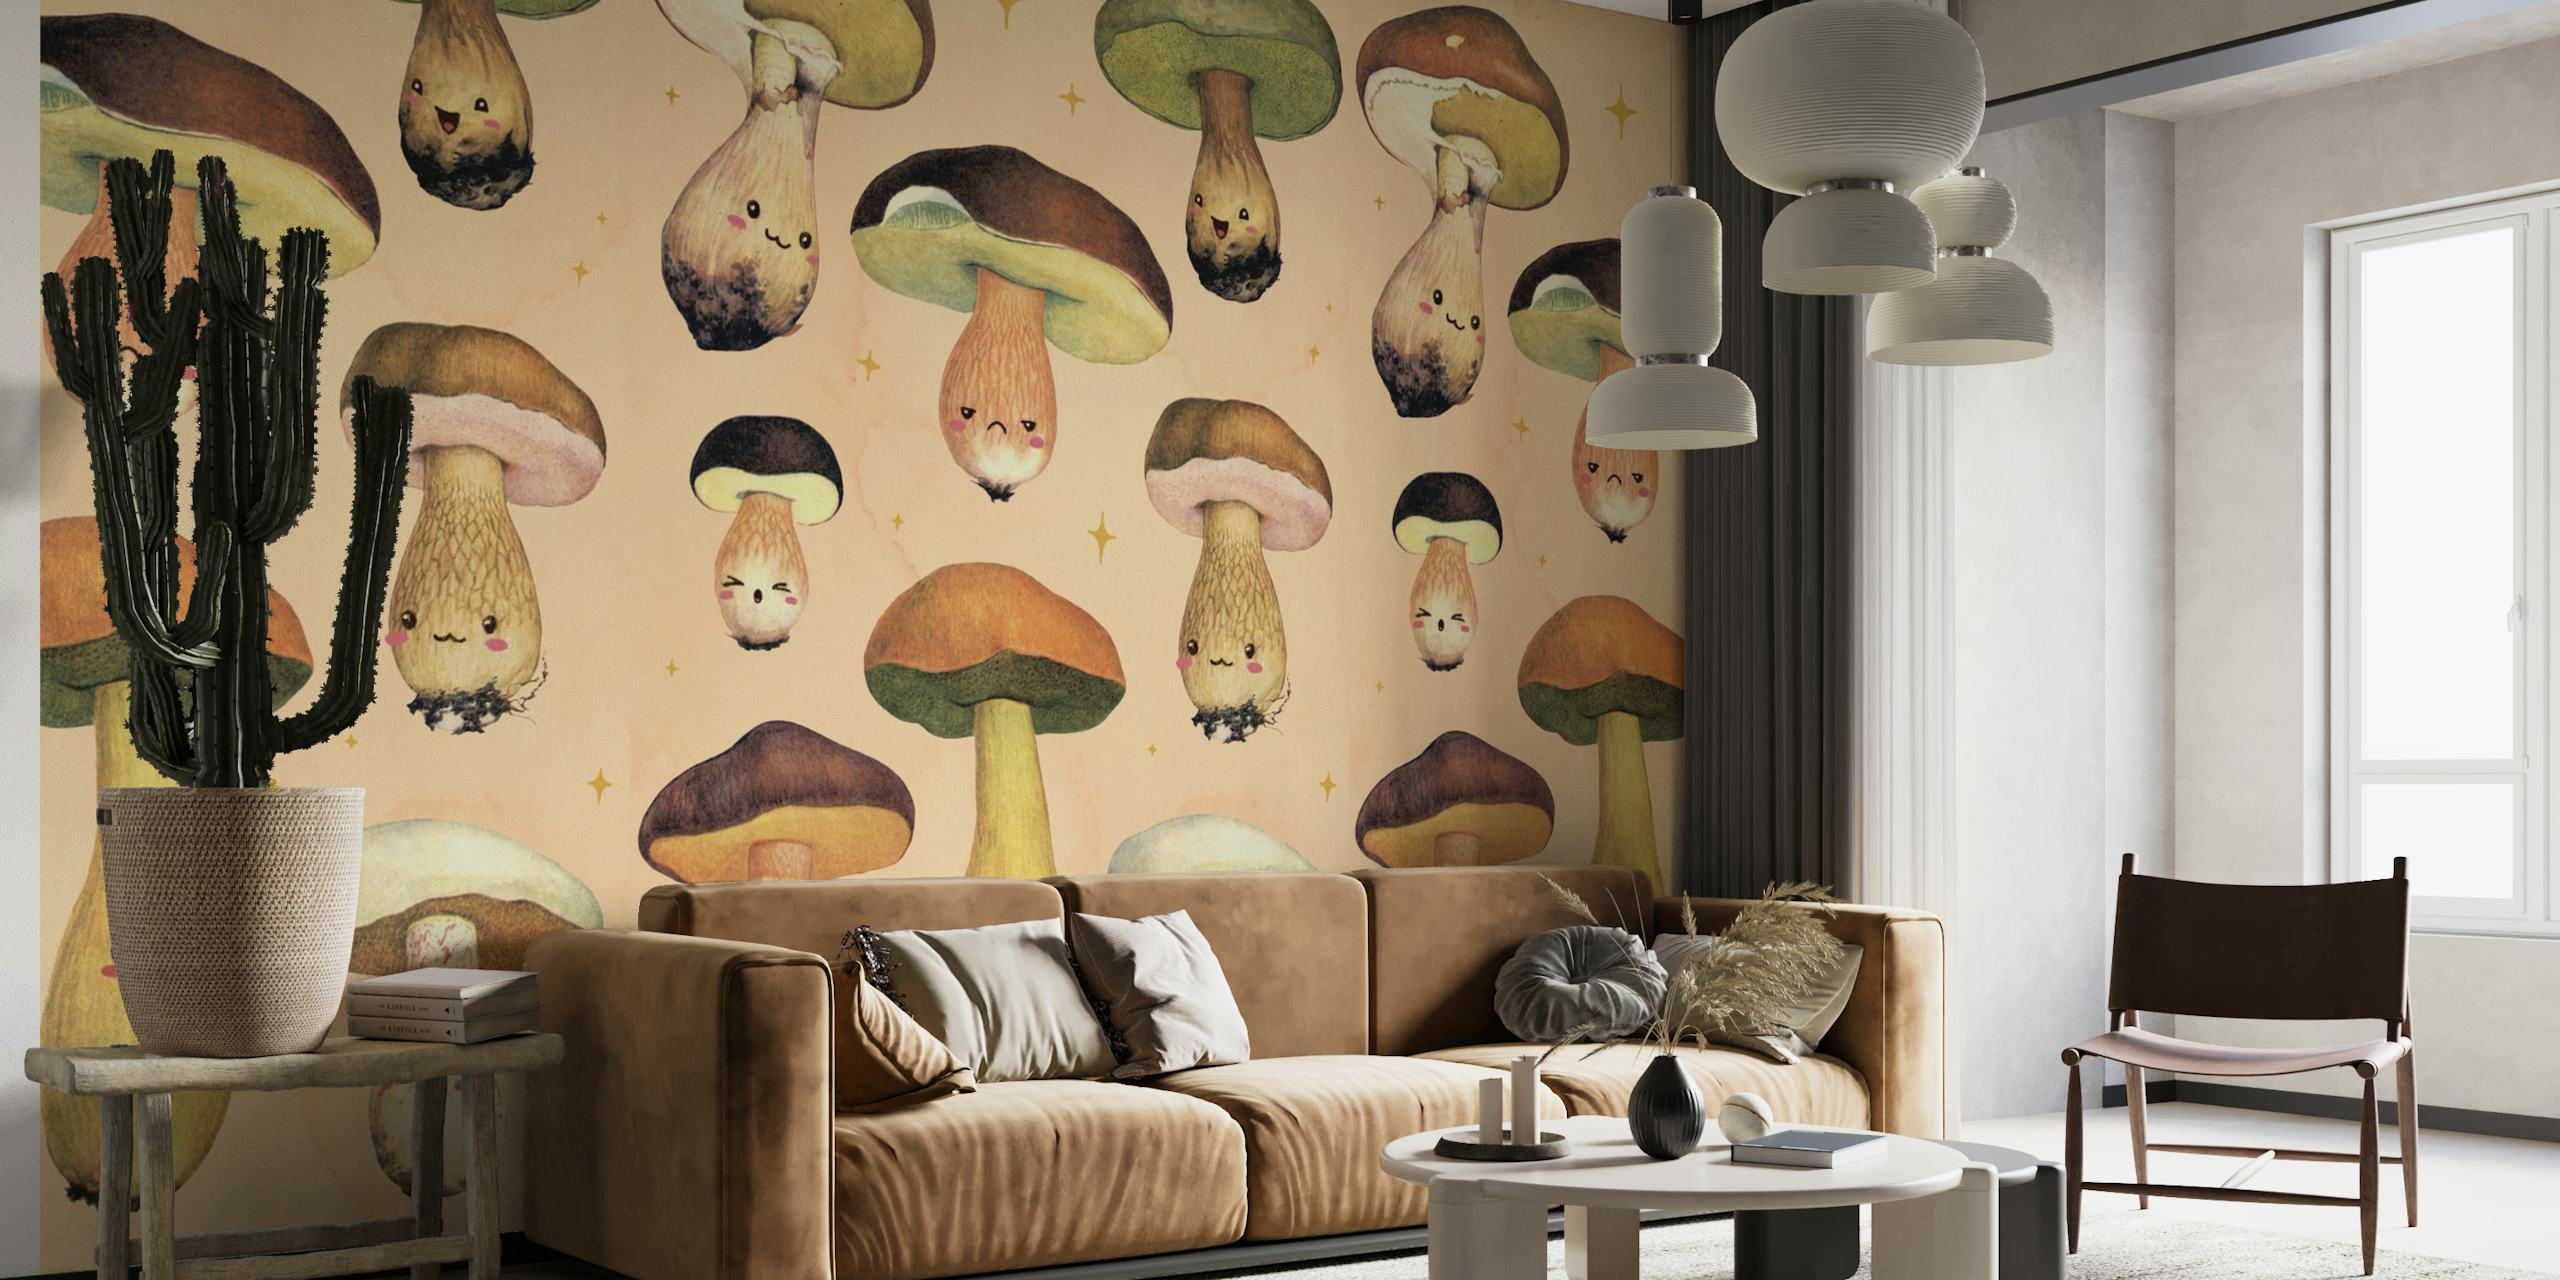 Ilustrovaná fototapeta Happy Forest Mushroom s rozmarnými postavičkami hub na teplém pozadí